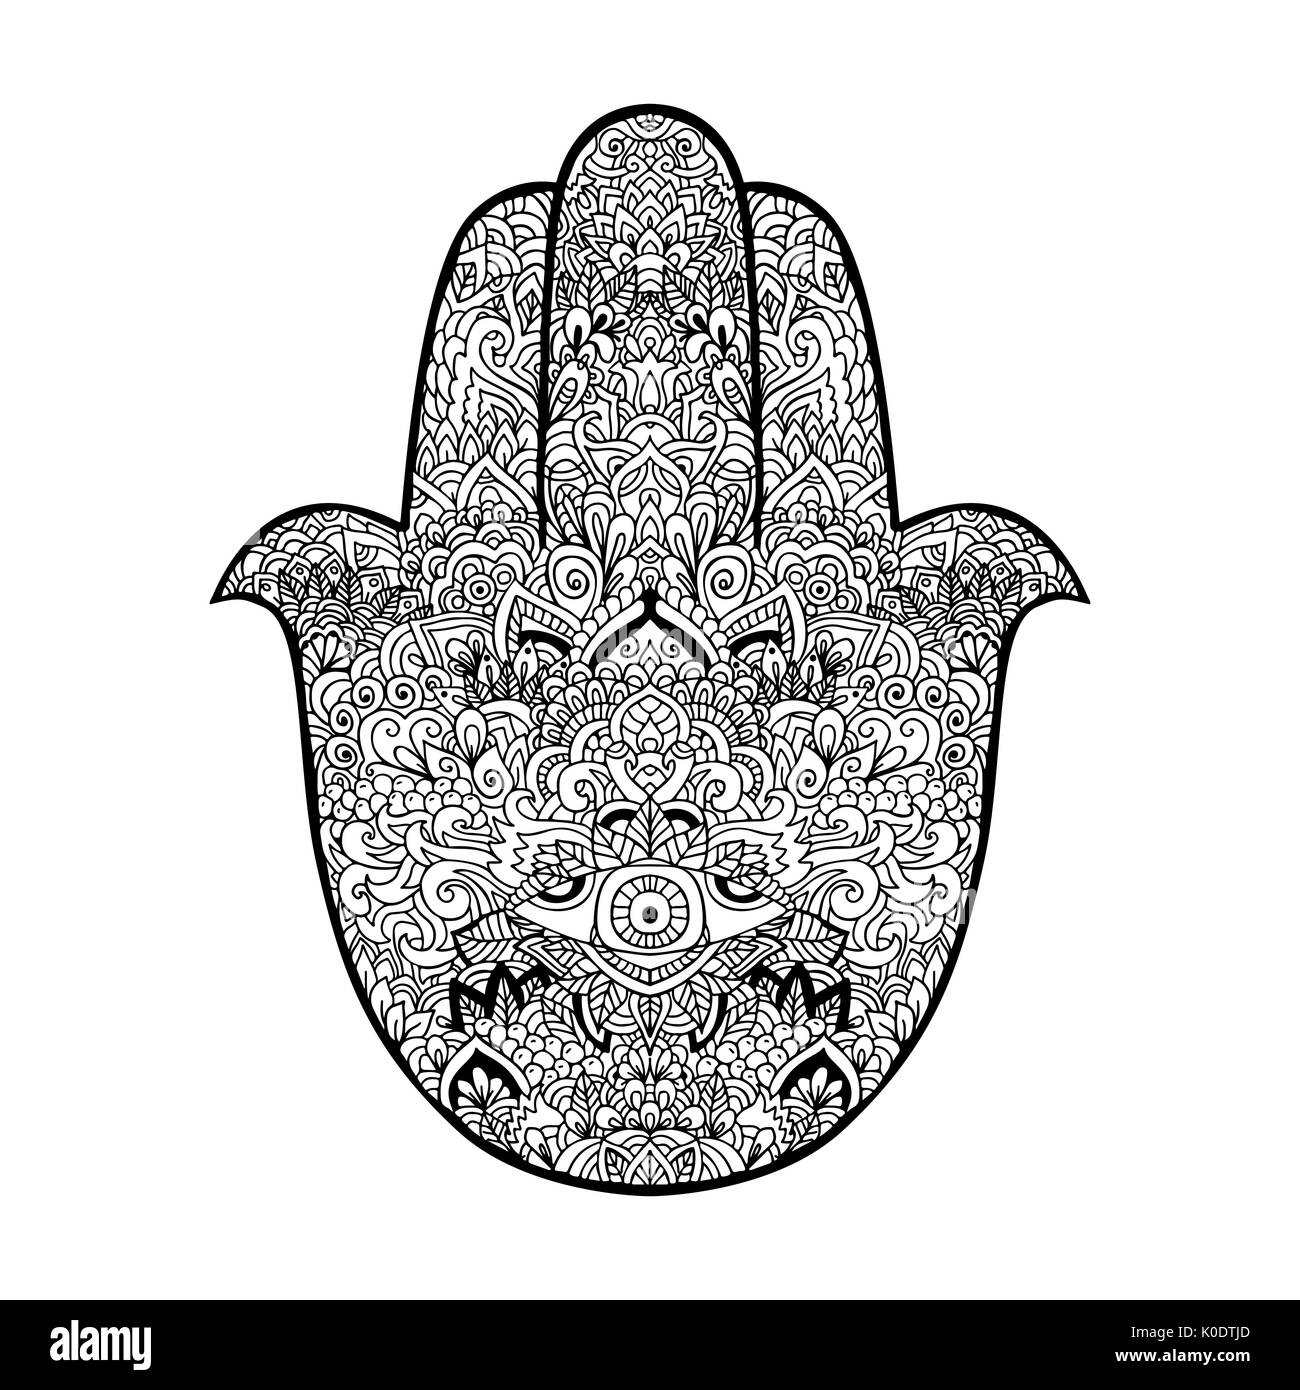 Hamsa Hand Symbol. Fatima hand Muster. Vector Illustration. Indische mandala Ornament für Erwachsene Malbücher. Asiatische Muster. Schwarze und weiße authentischen Hintergrund. Stock Vektor